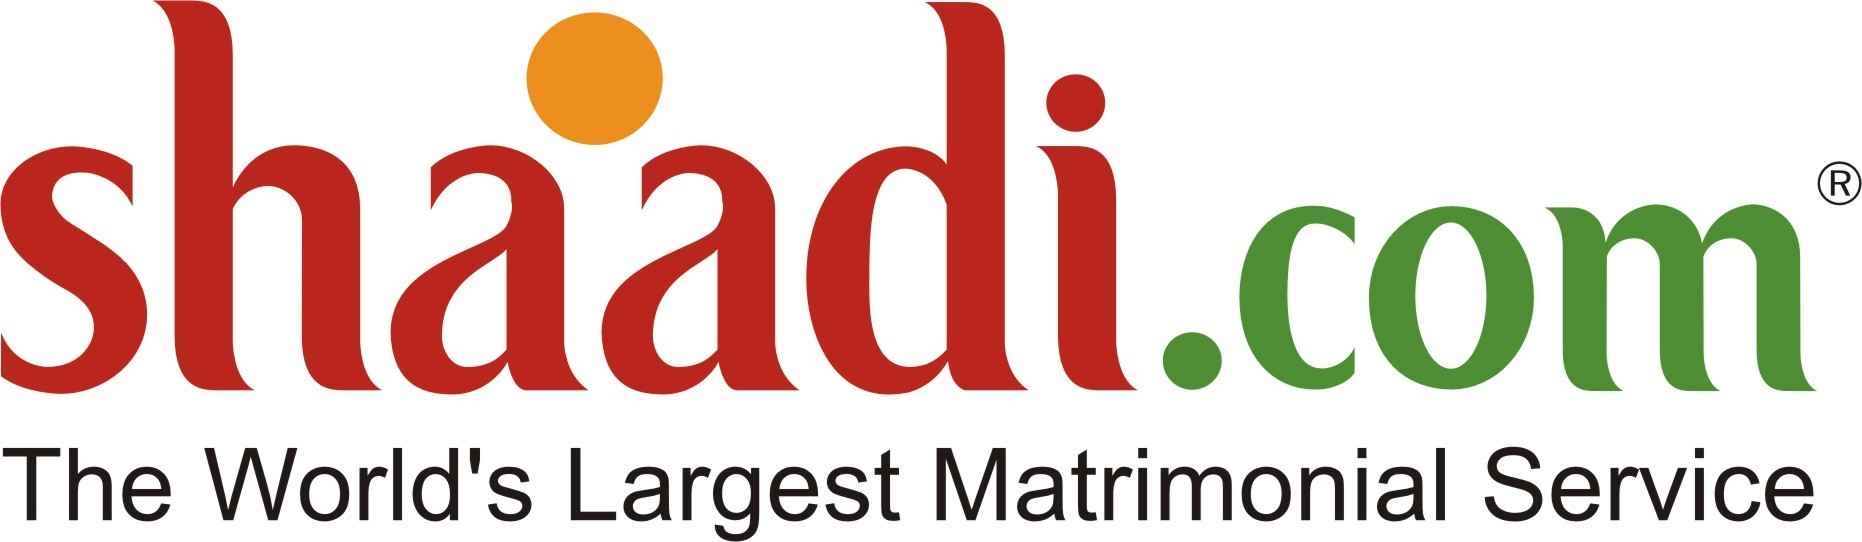 Shaadi.com Logo png